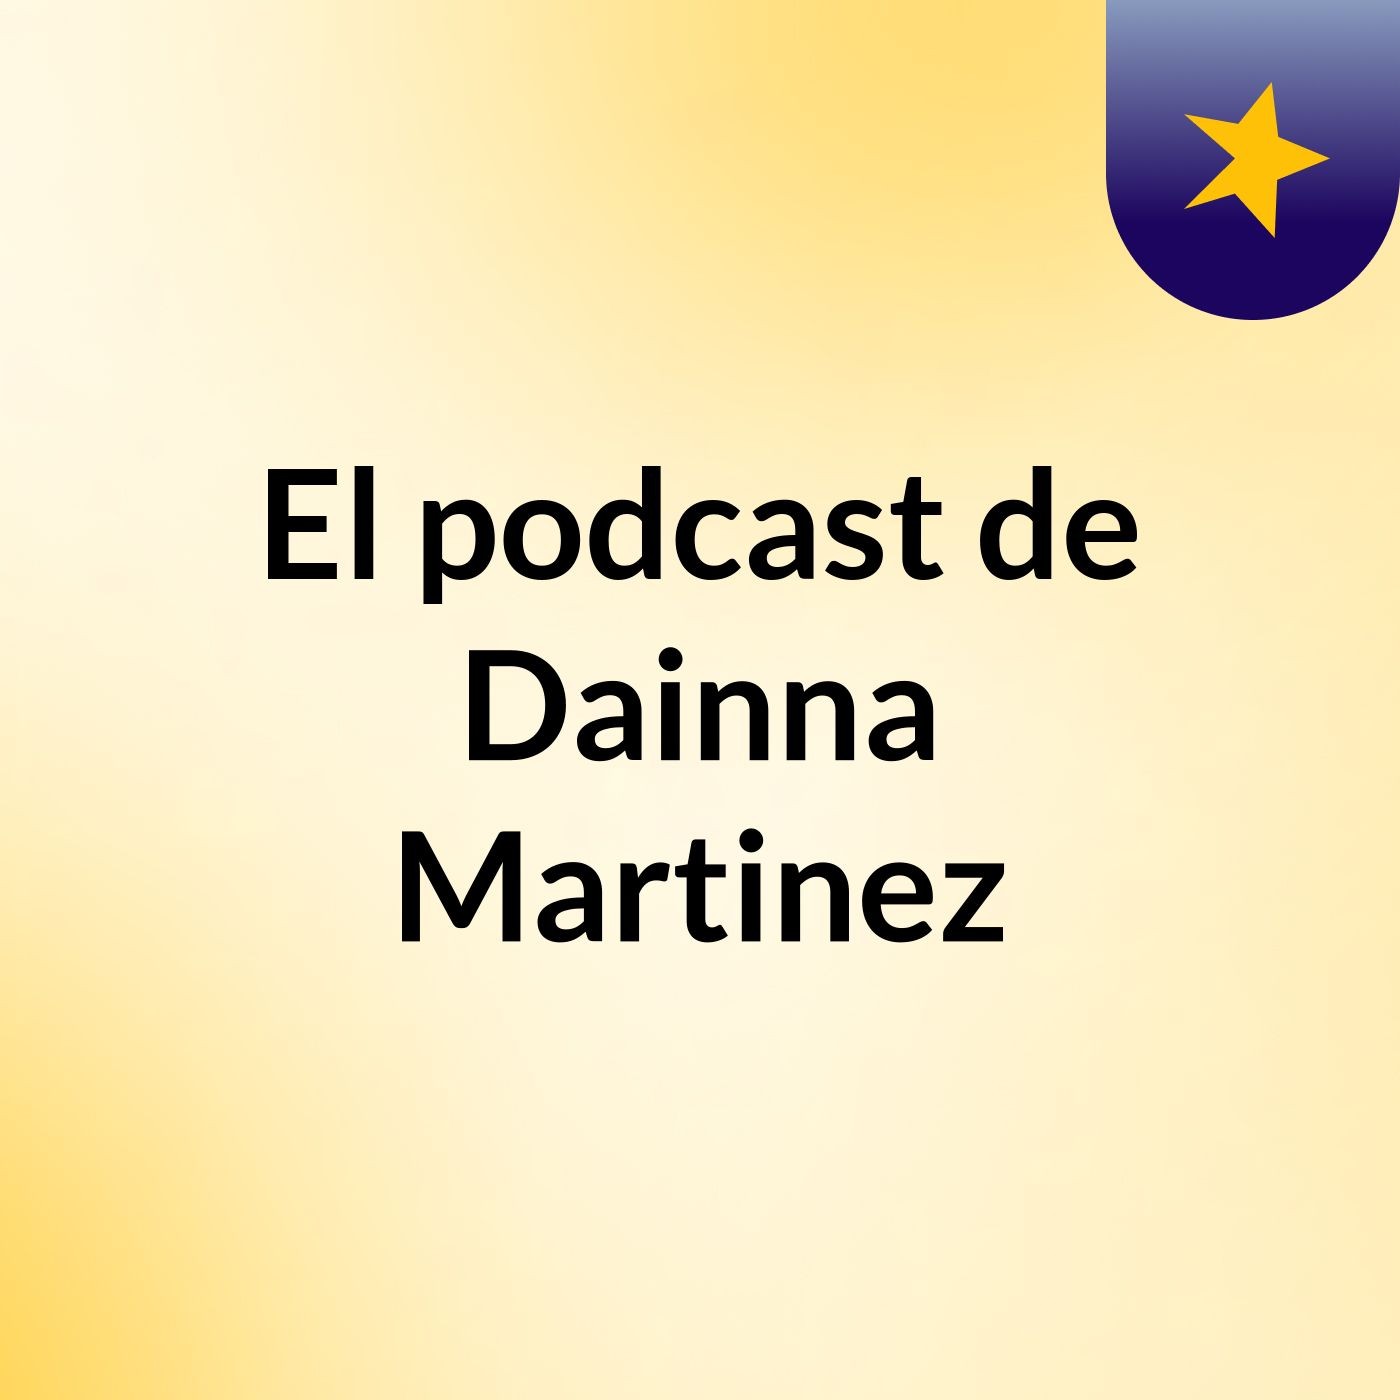 El podcast de Dainna Martinez